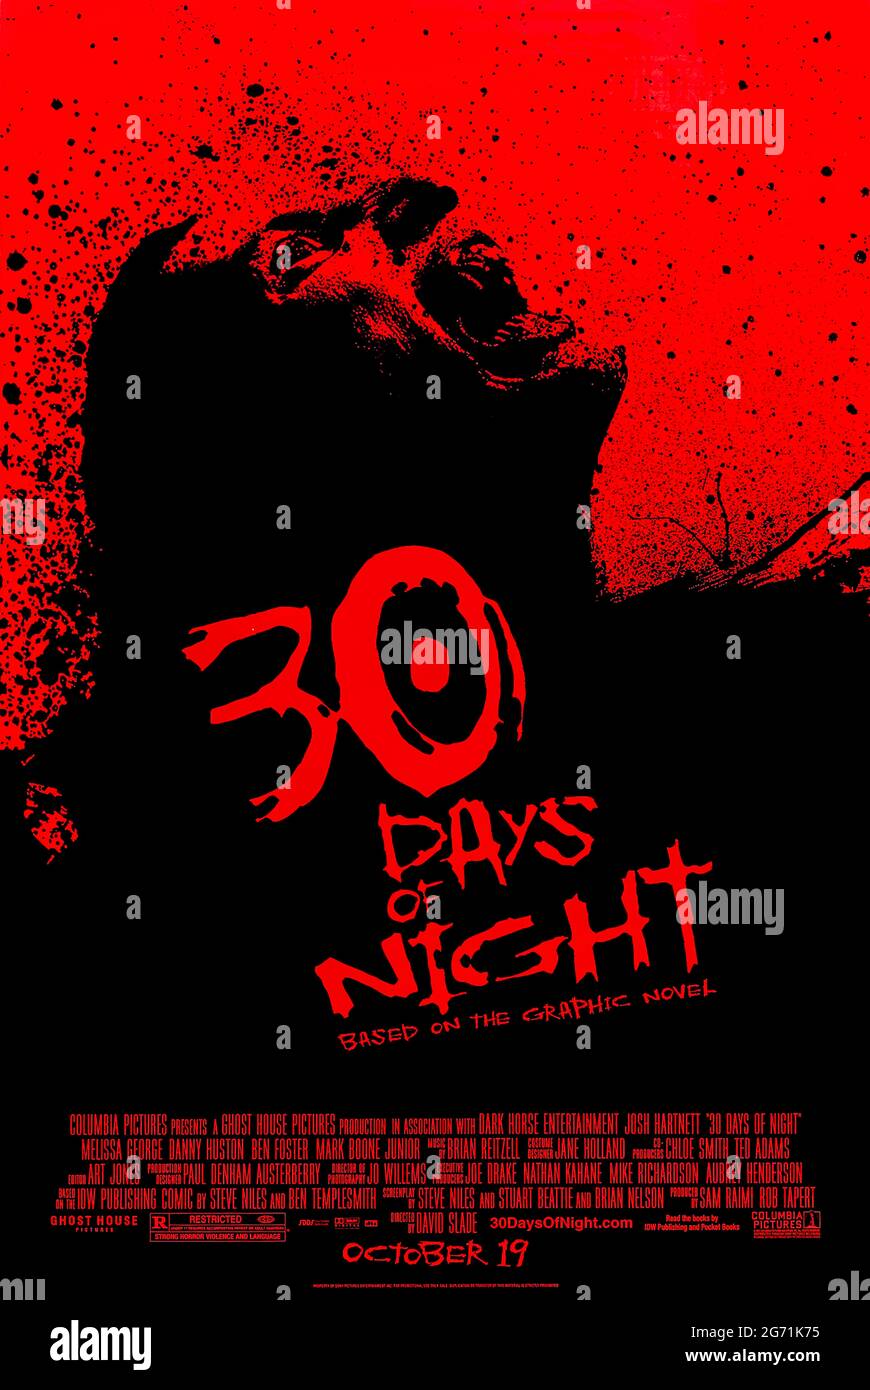 30 Days of Night (2007) dirigida por David Slade y protagonizada por Josh Hartnet, Melissa George y Danny Huston. Basado en una novela gráfica, un pequeño sheriff de la ciudad se presenta contra una pandilla de vampiros en su ciudad de Alaska, justo cuando se sumerge en la oscuridad durante 30 días. Foto de stock